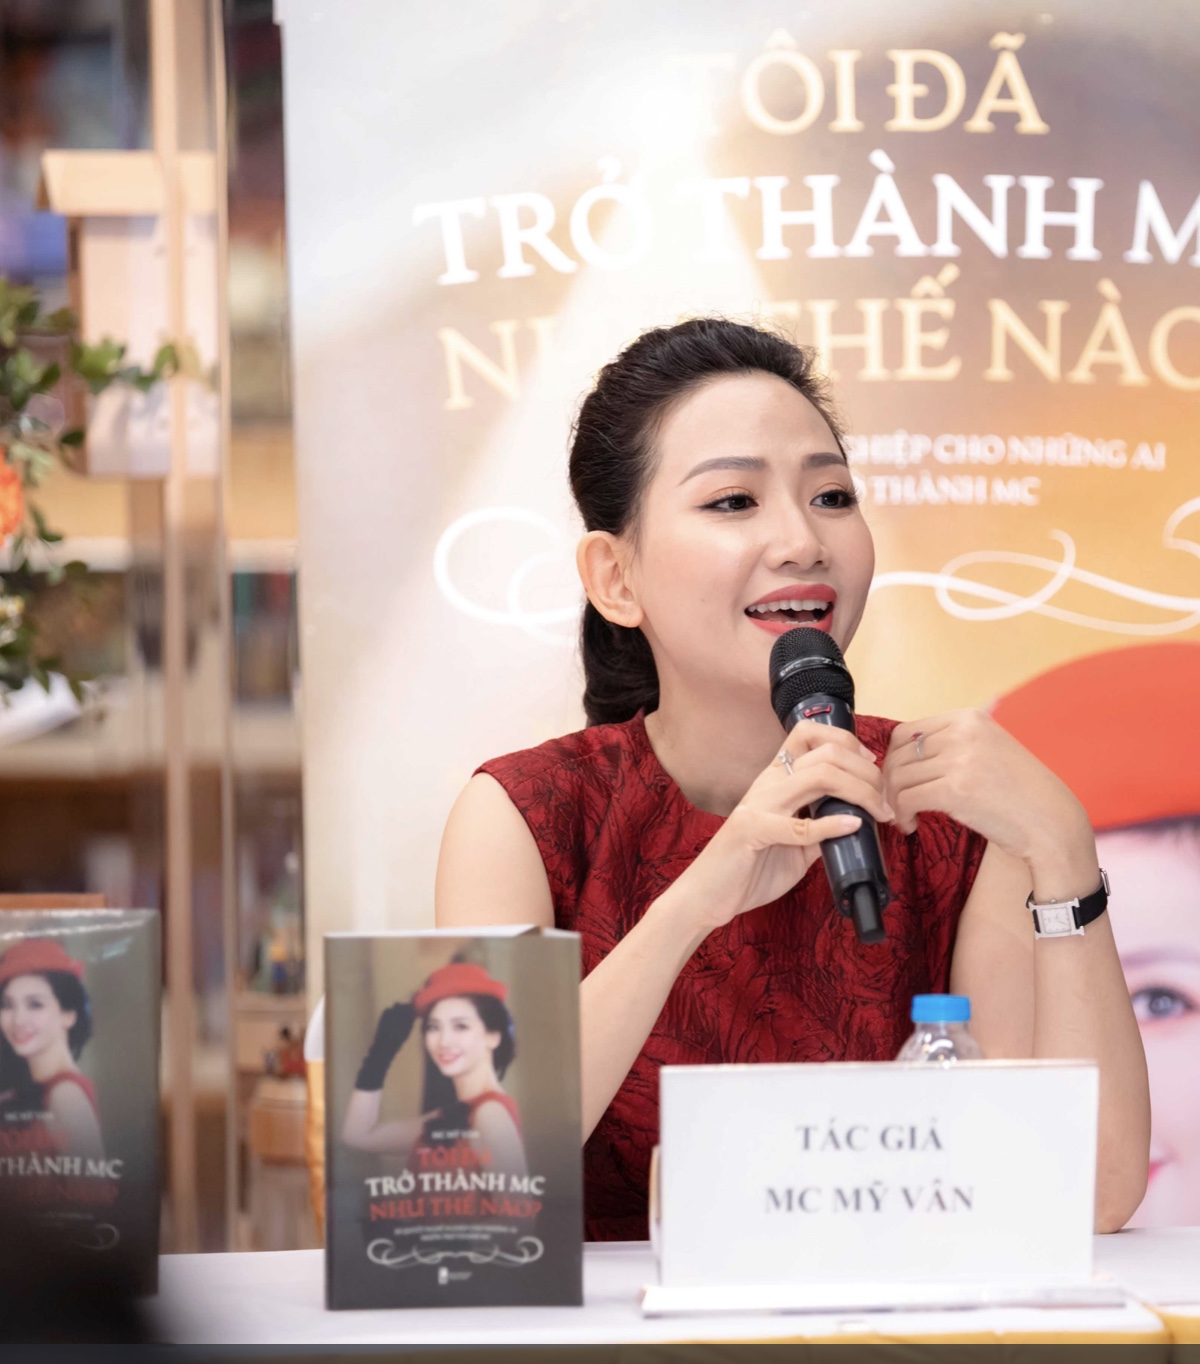 Mỹ Vân ra mắt cuốn sách đầu tiên về nghề MC tại Việt Nam - Ảnh 1.